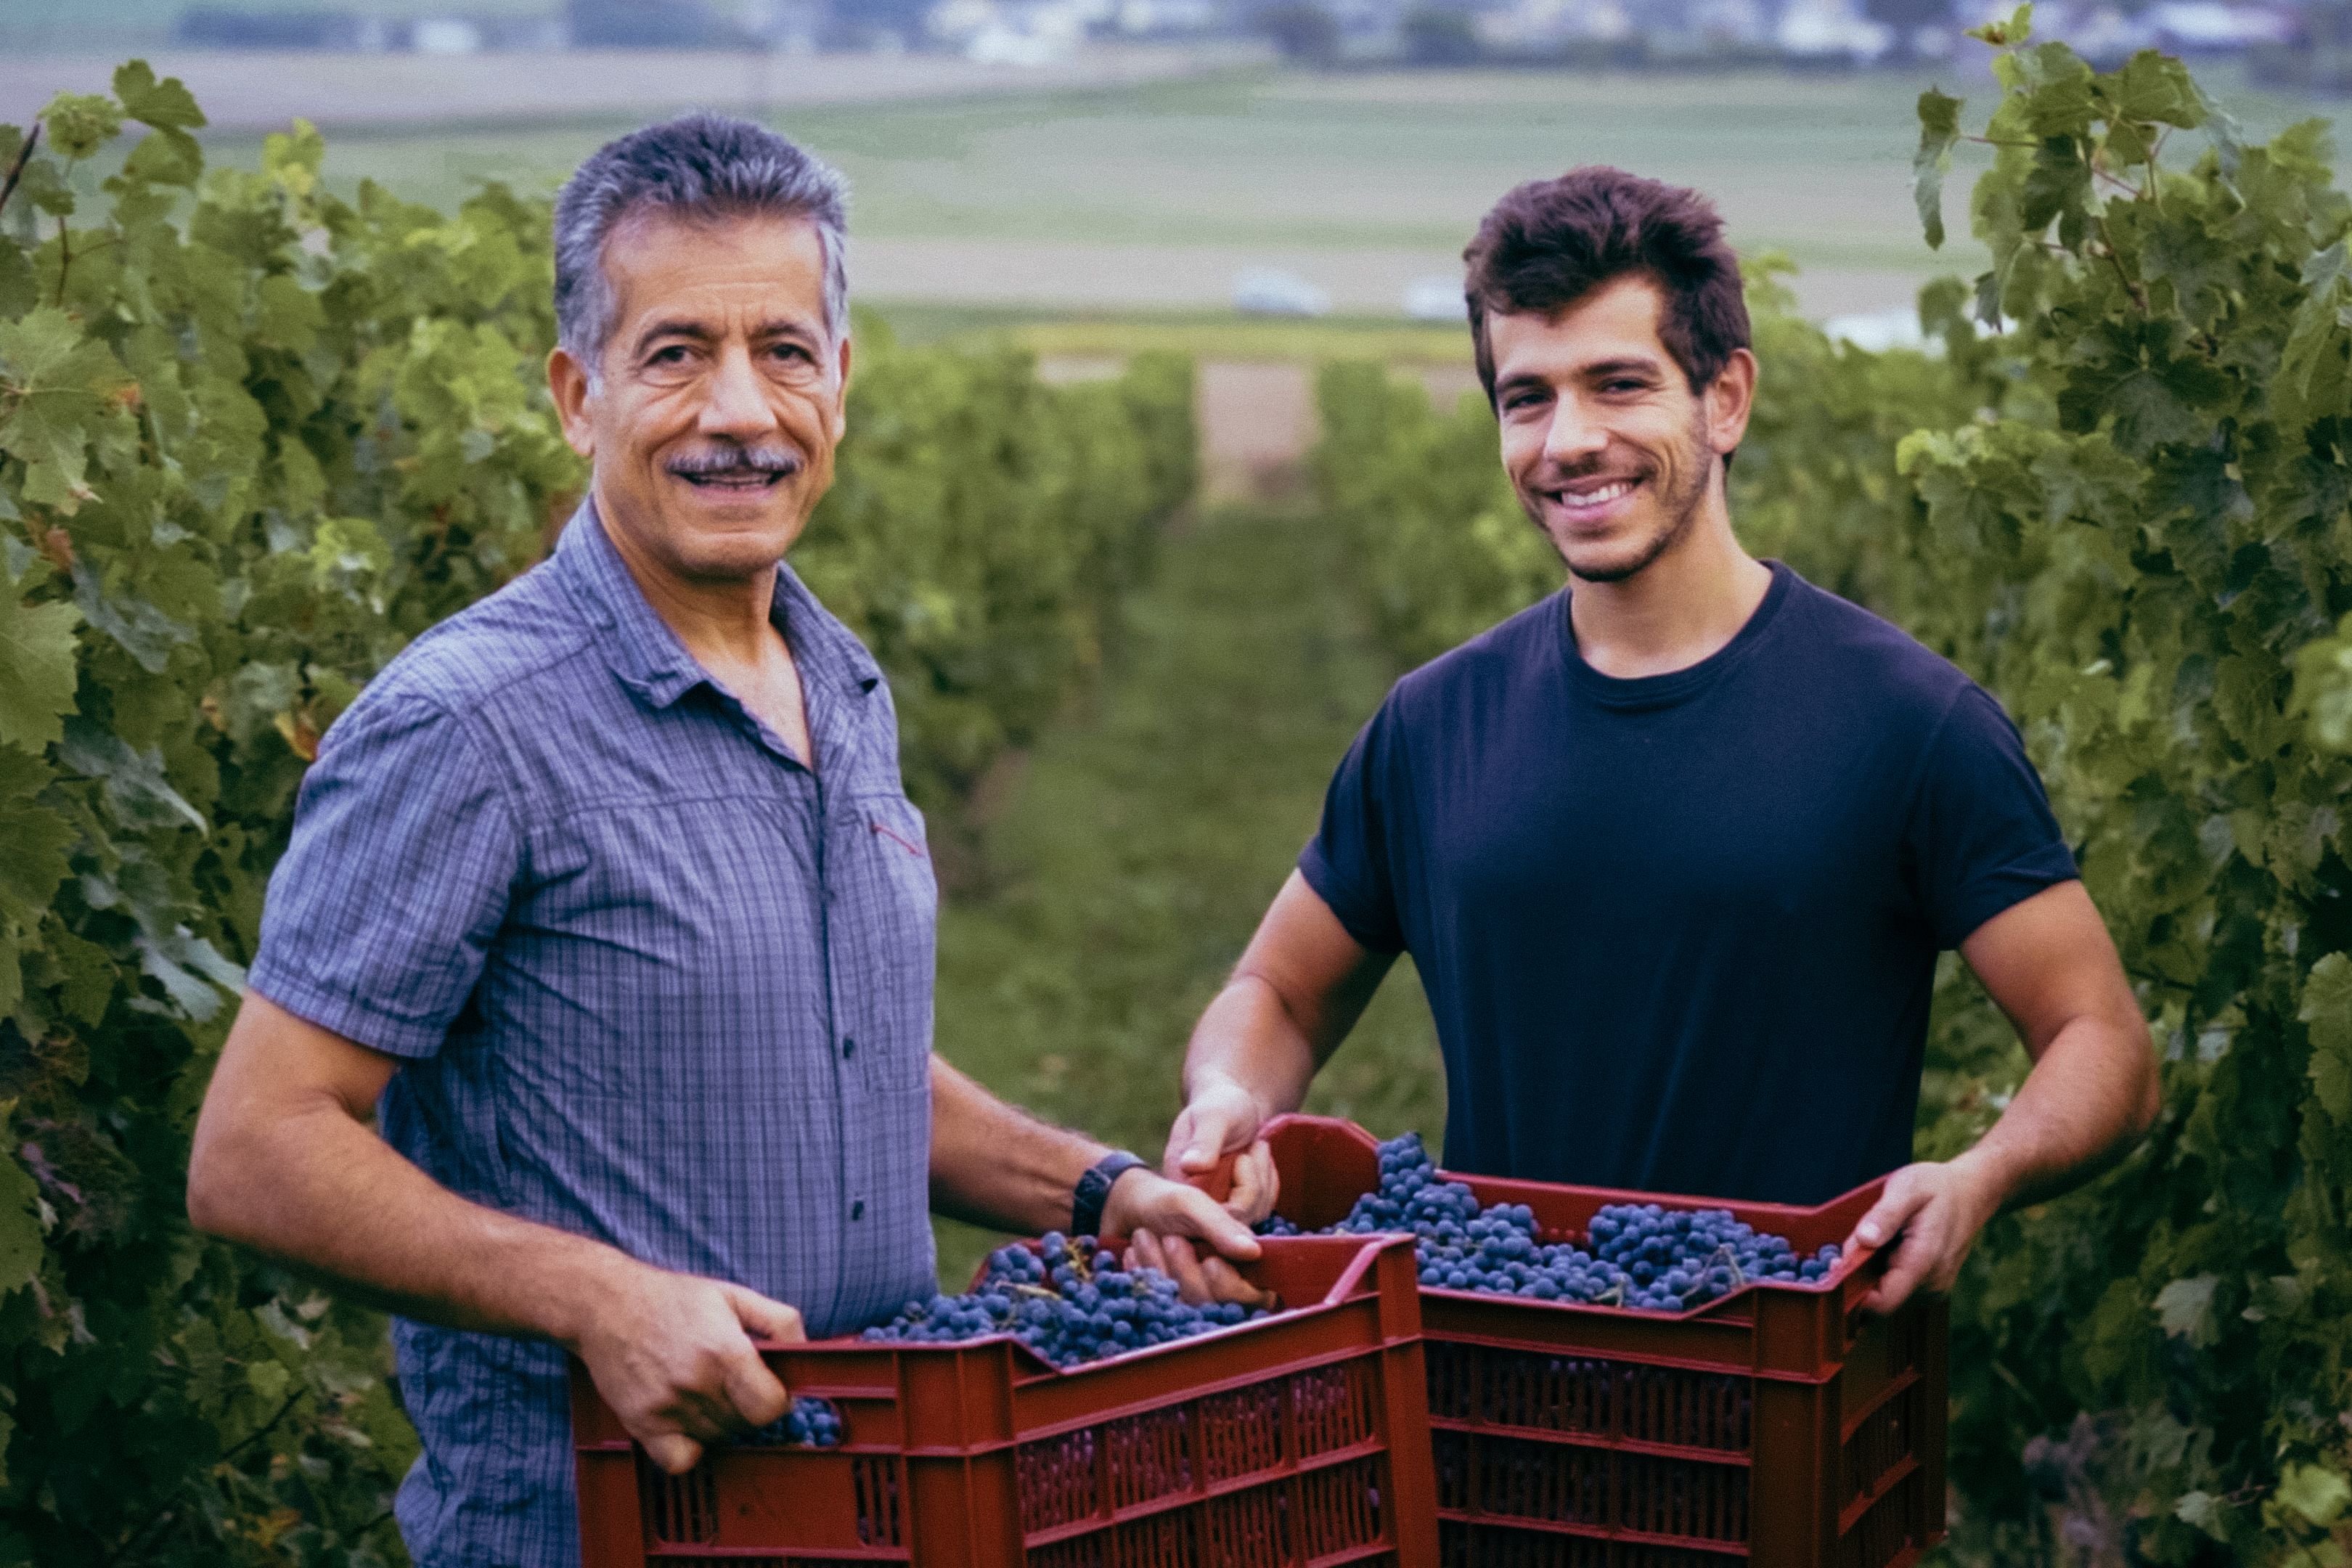 Le duo Sfeir, Antoine le fils et Fady le père, ont fondé Pif à Papa. Ils vinifient du raisin acheté dans le Val-de-Loire et le vendent par abonnement. Ils lancent une opération de financement participatif pour acheter leurs propres vignes en Seine-et-Marne. DR.